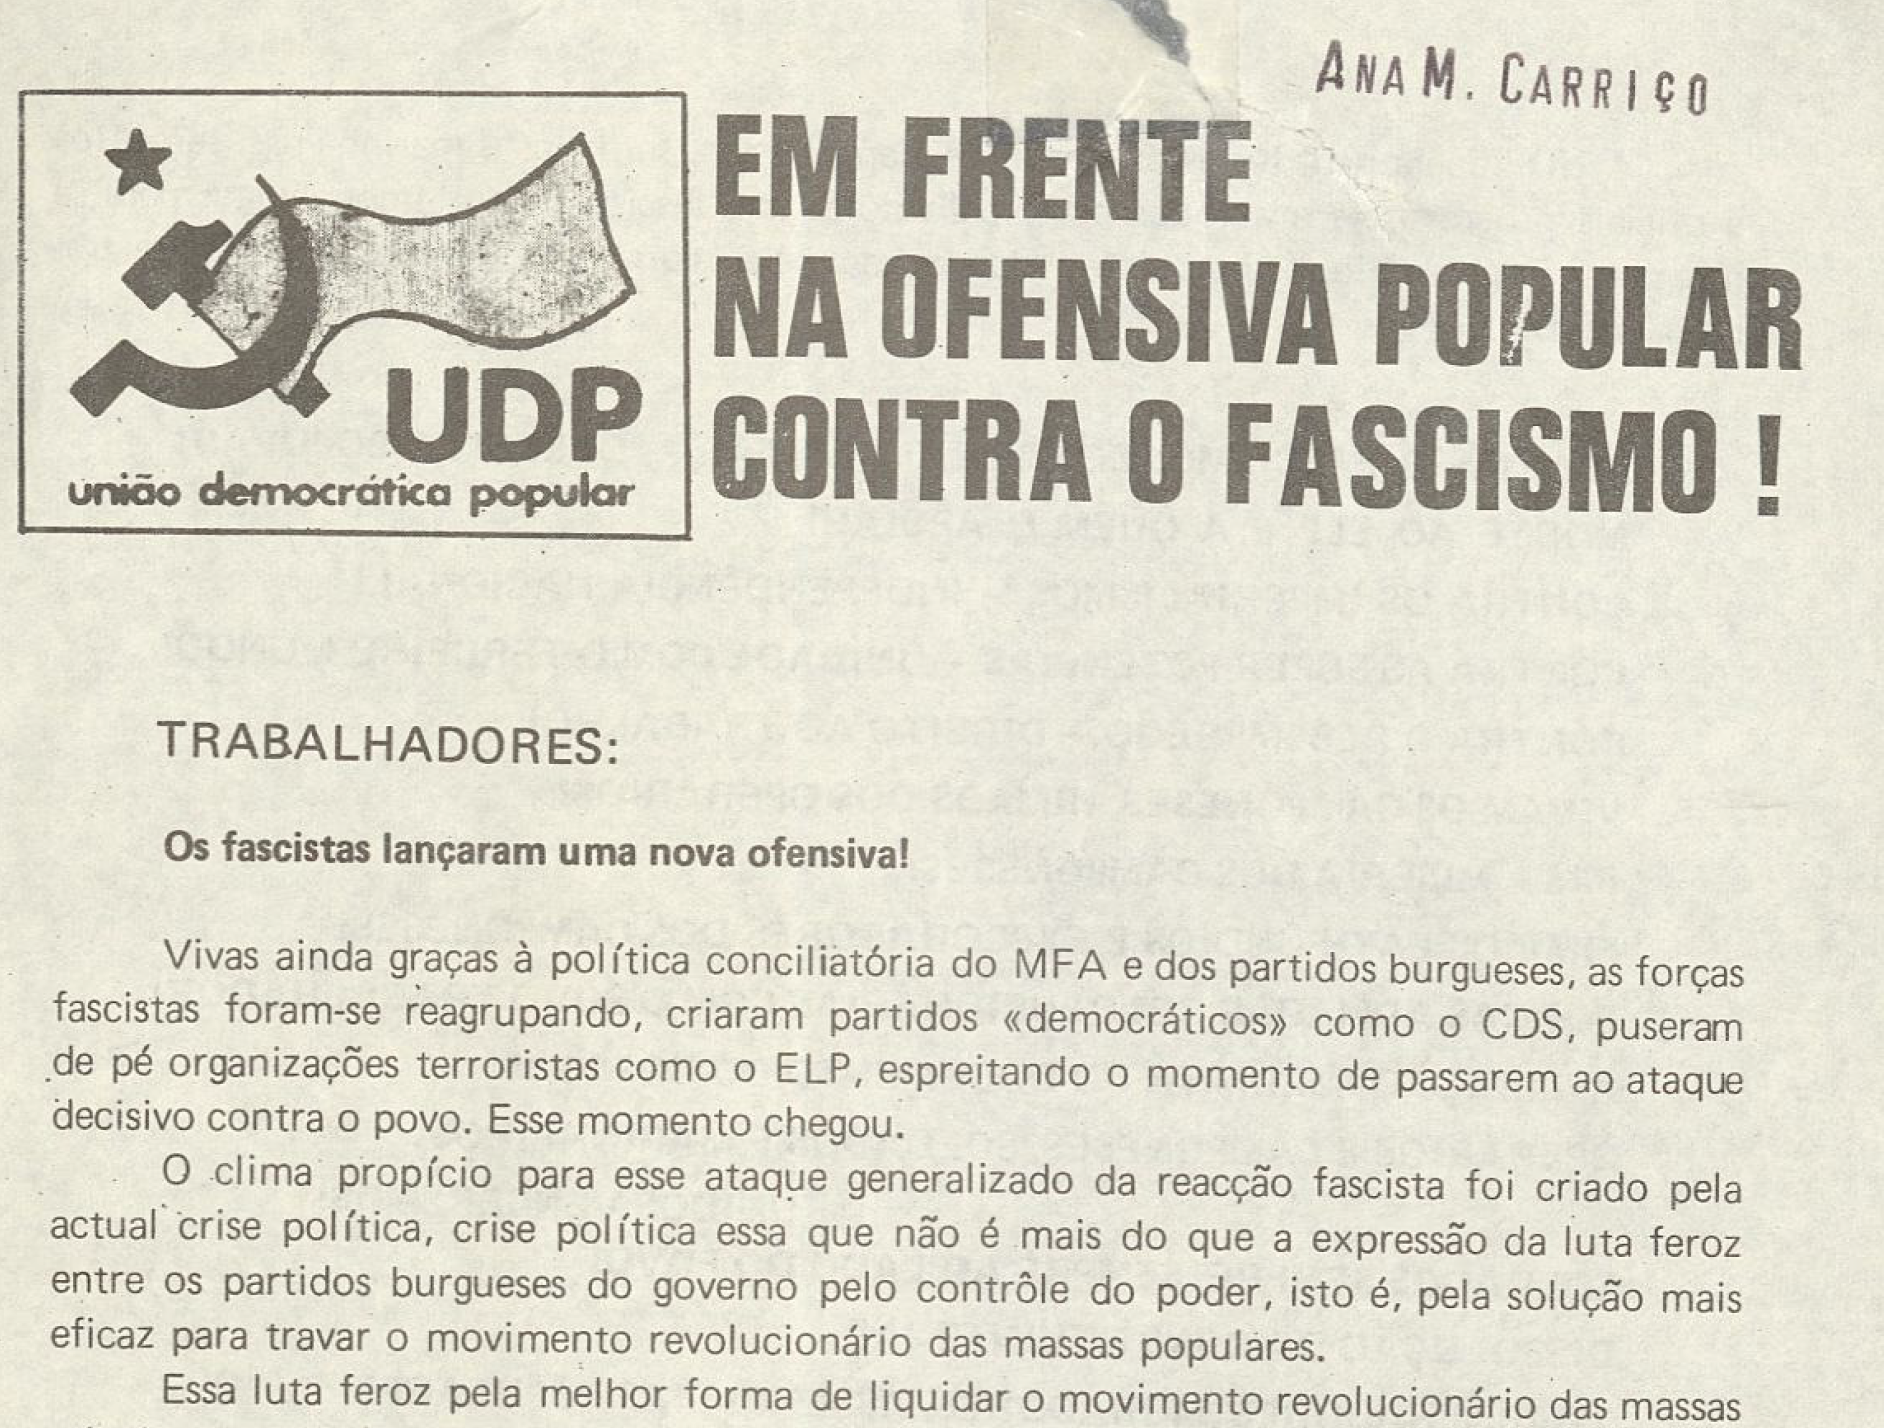 Em frente na ofensiva popular contra o fascismo (UDP)